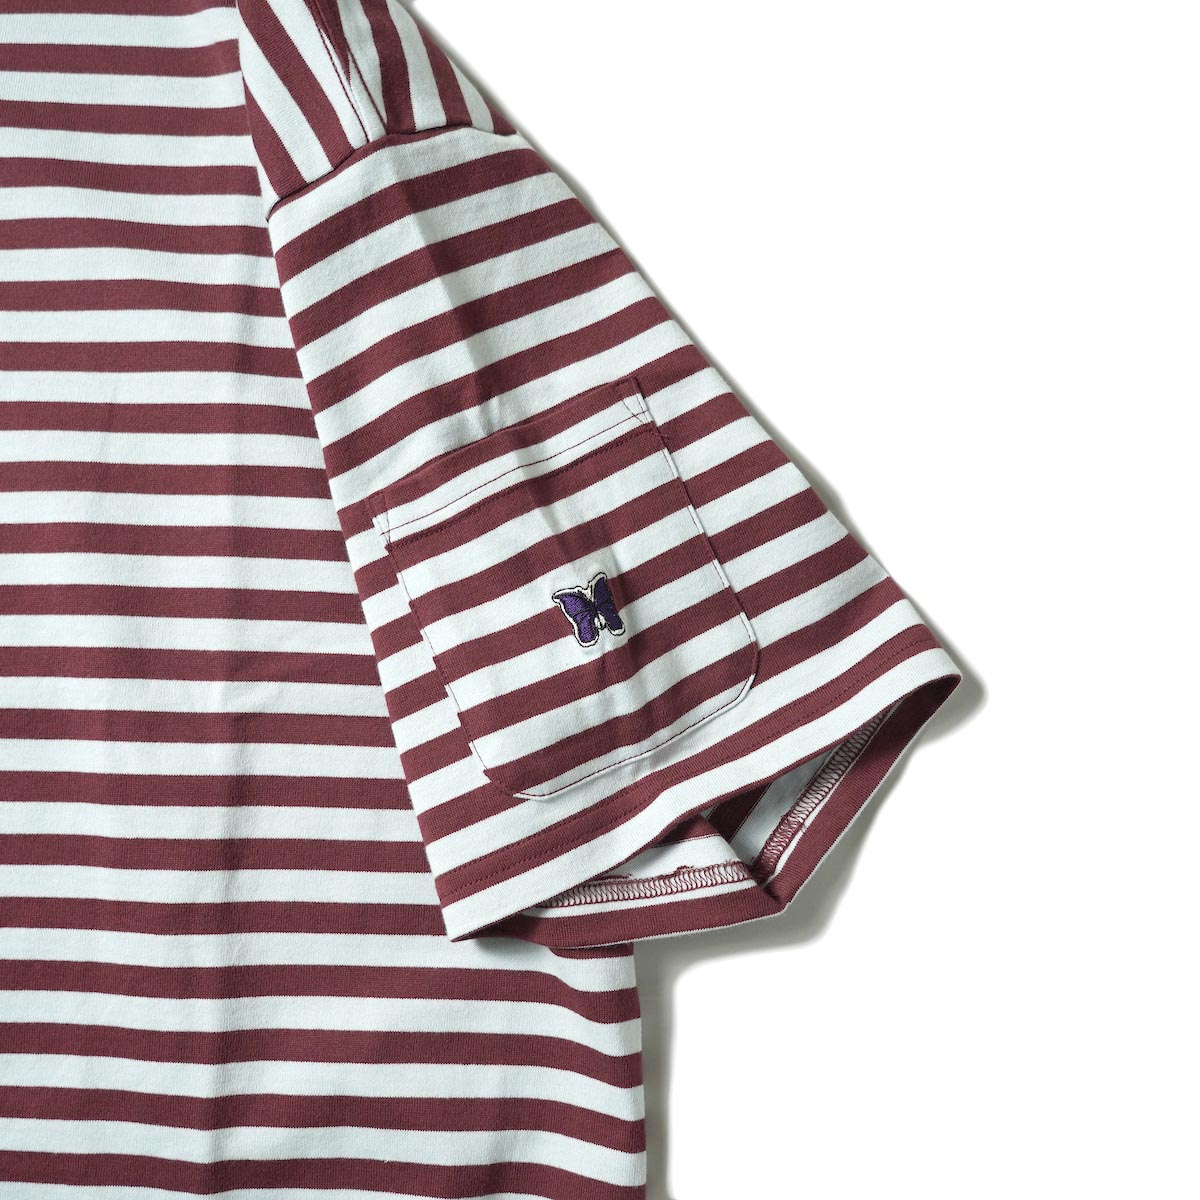 Needles / S/S Crew Neck Tee - Cotton Stripe Jersey (Sax/Wine)袖